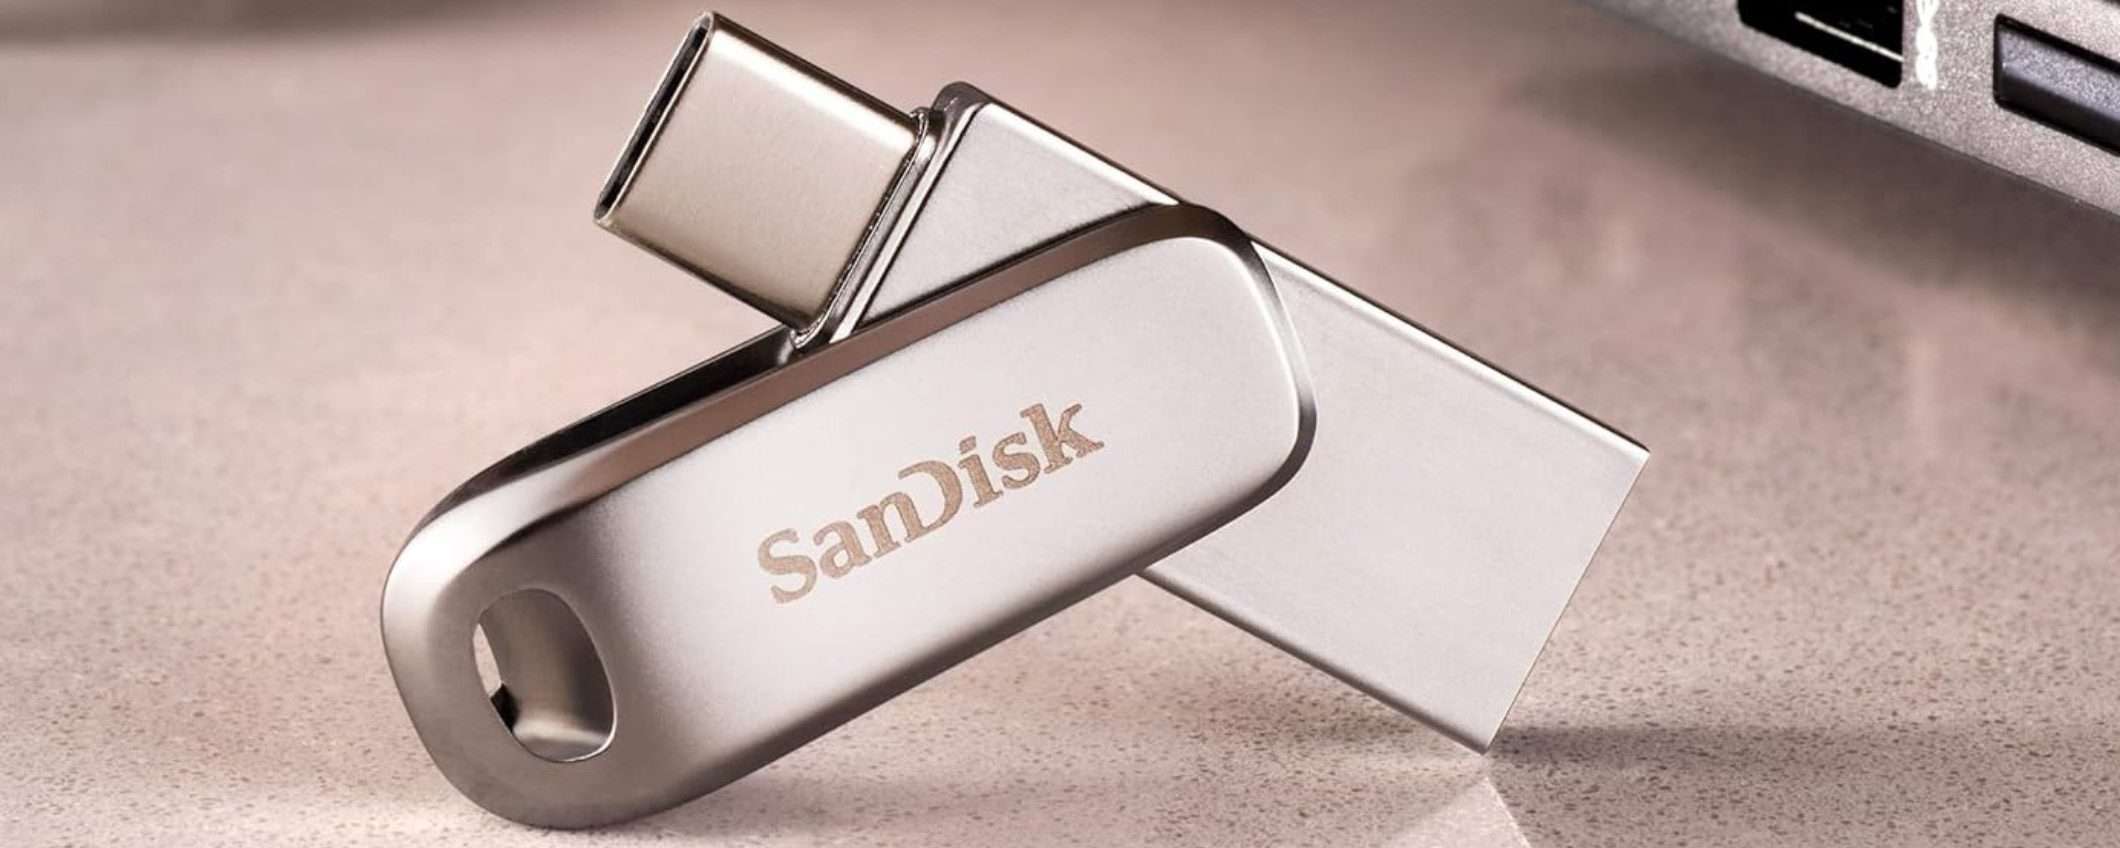 SanDisk SHOCK su Amazon: chiavetta 2 in 1 ultra veloce a 12€ (128GB)